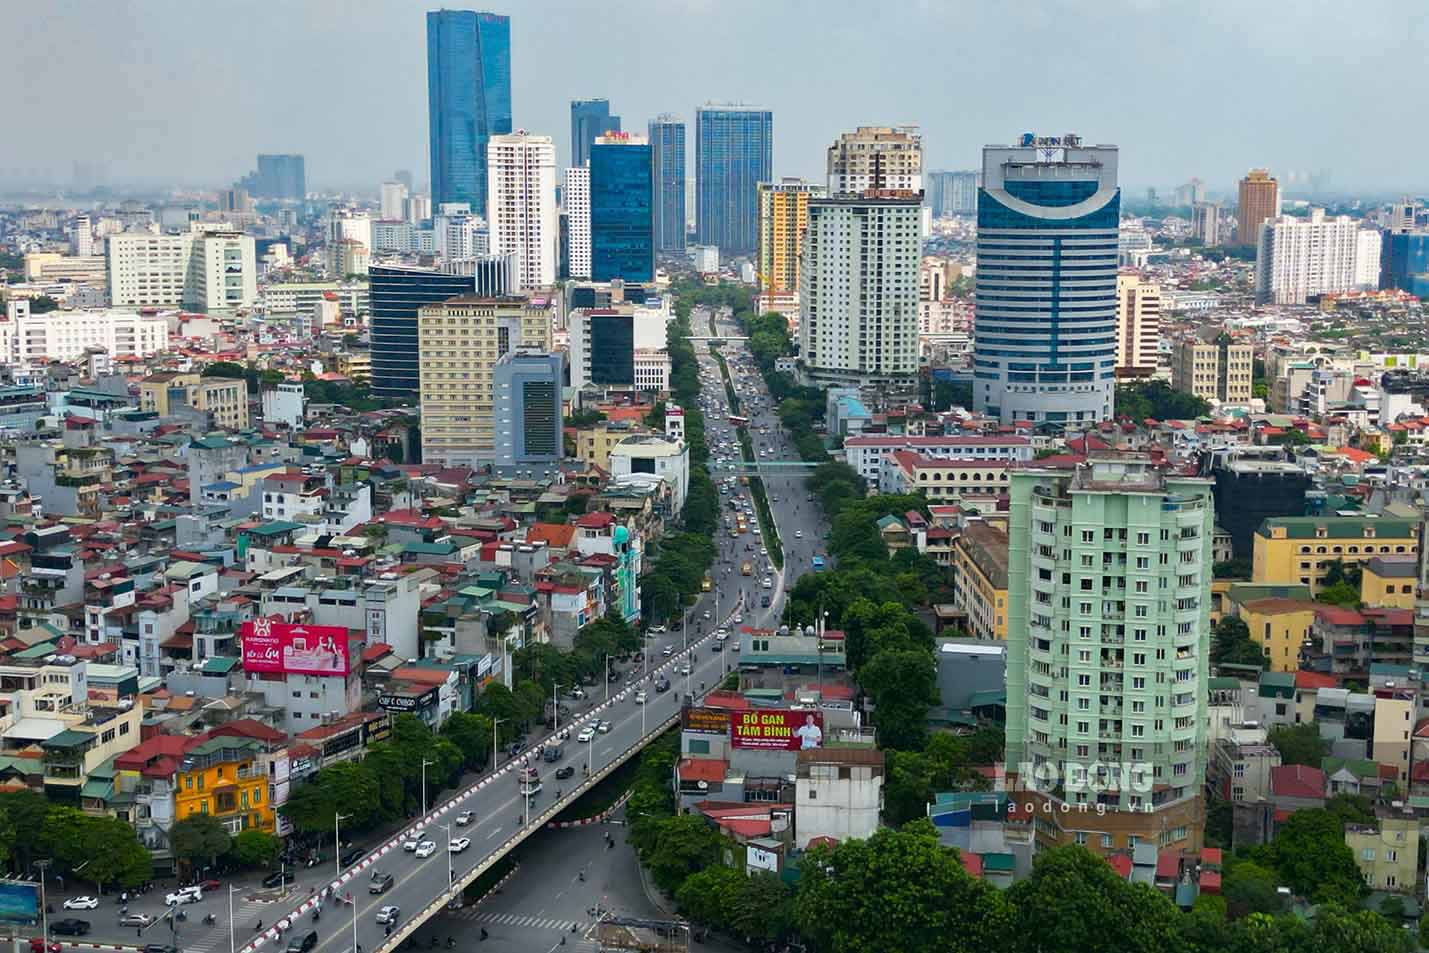 15 năm qua cũng là nền tảng vững chắc cho những kế hoạch rộng lớn hơn với Hà Nội, động lực mạnh mẽ cho cả Vùng kinh tế trọng điểm Bắc Bộ và cả nước nói chung, Thủ đô Văn hiến, Văn minh và Hiện đại.